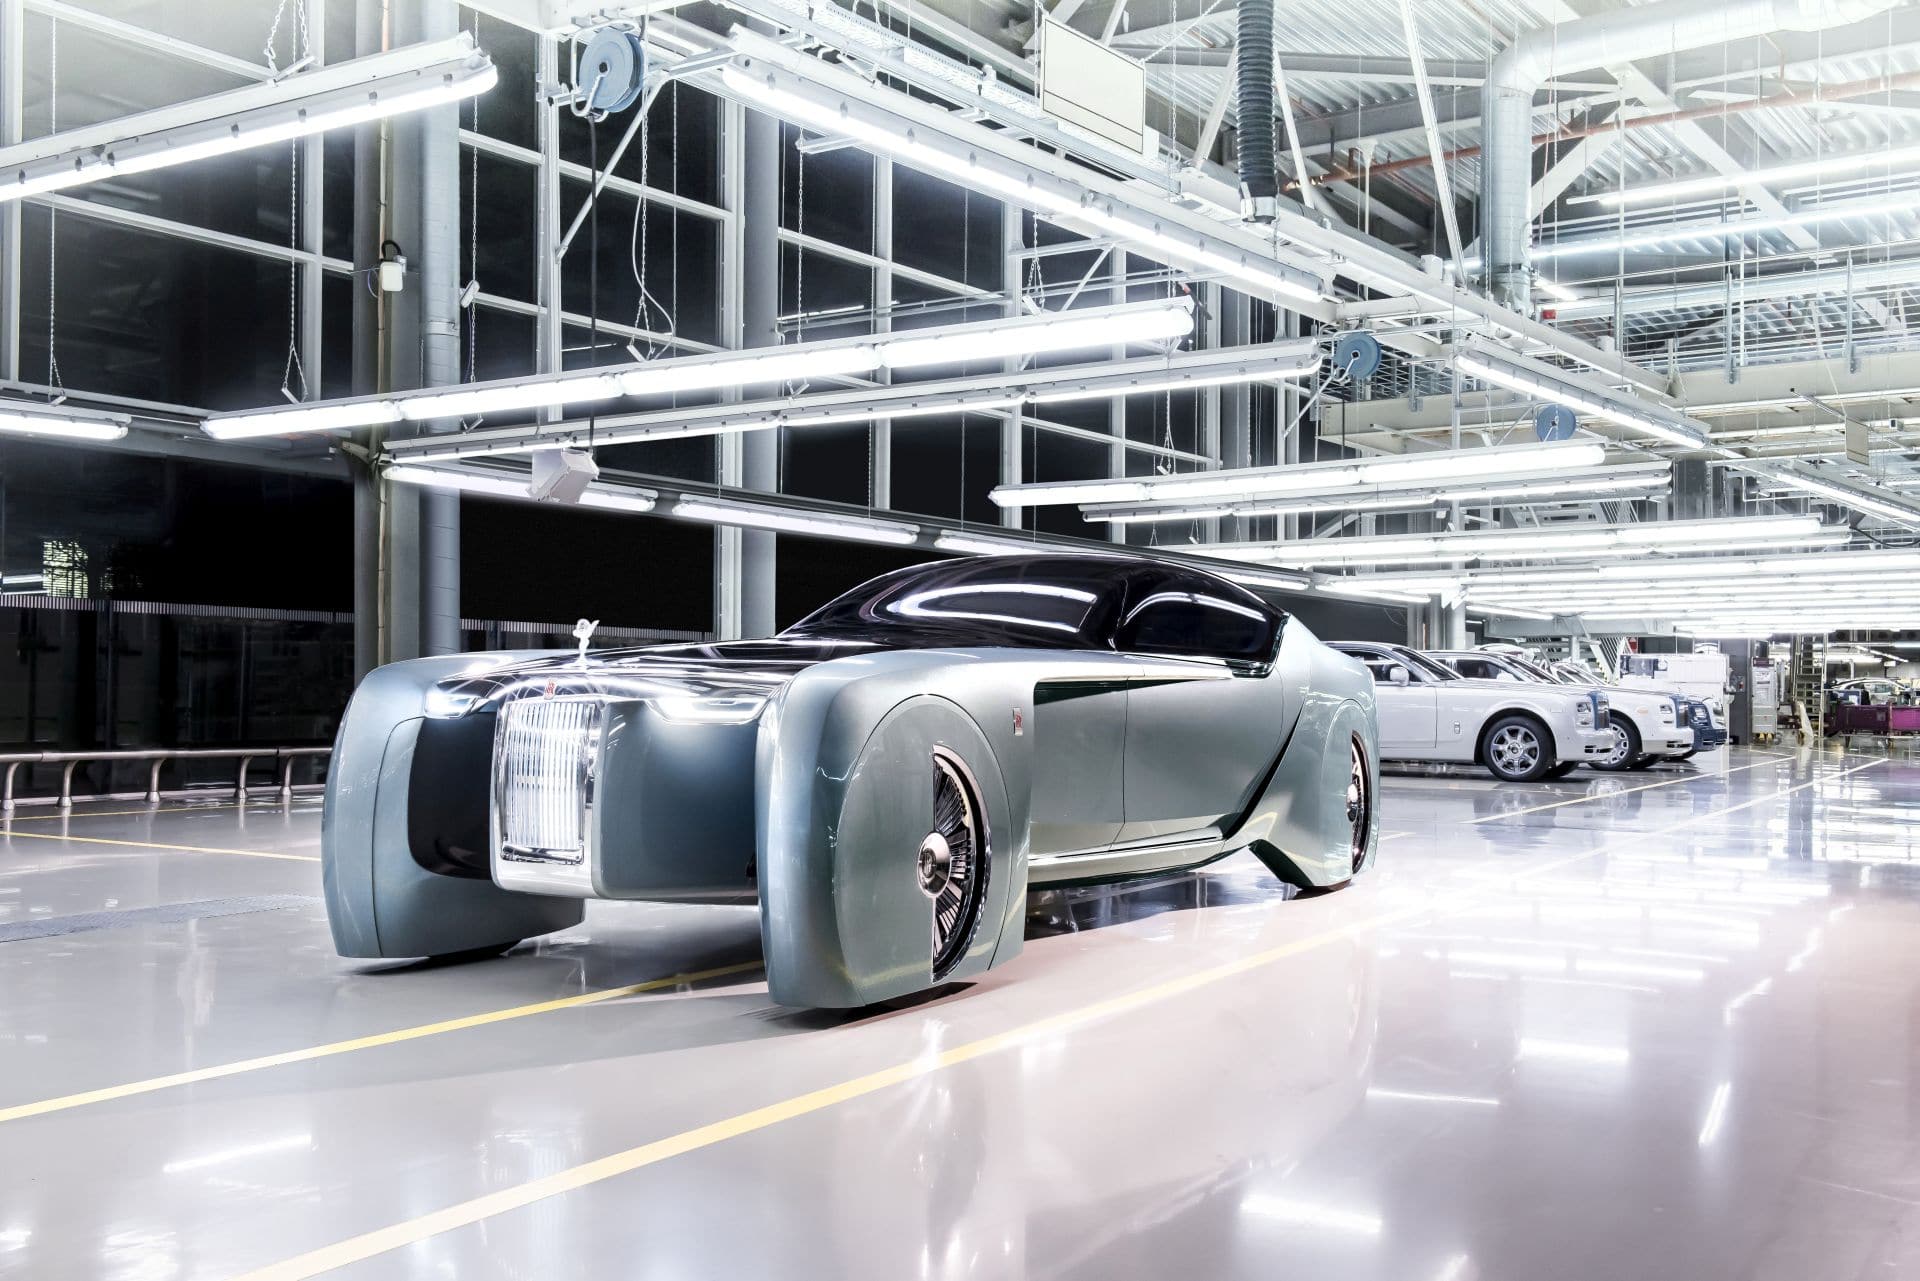 Gerücht: Elektro-Rolls-Royce kommt mit BMW i7 Motoren und riesiger Batterie